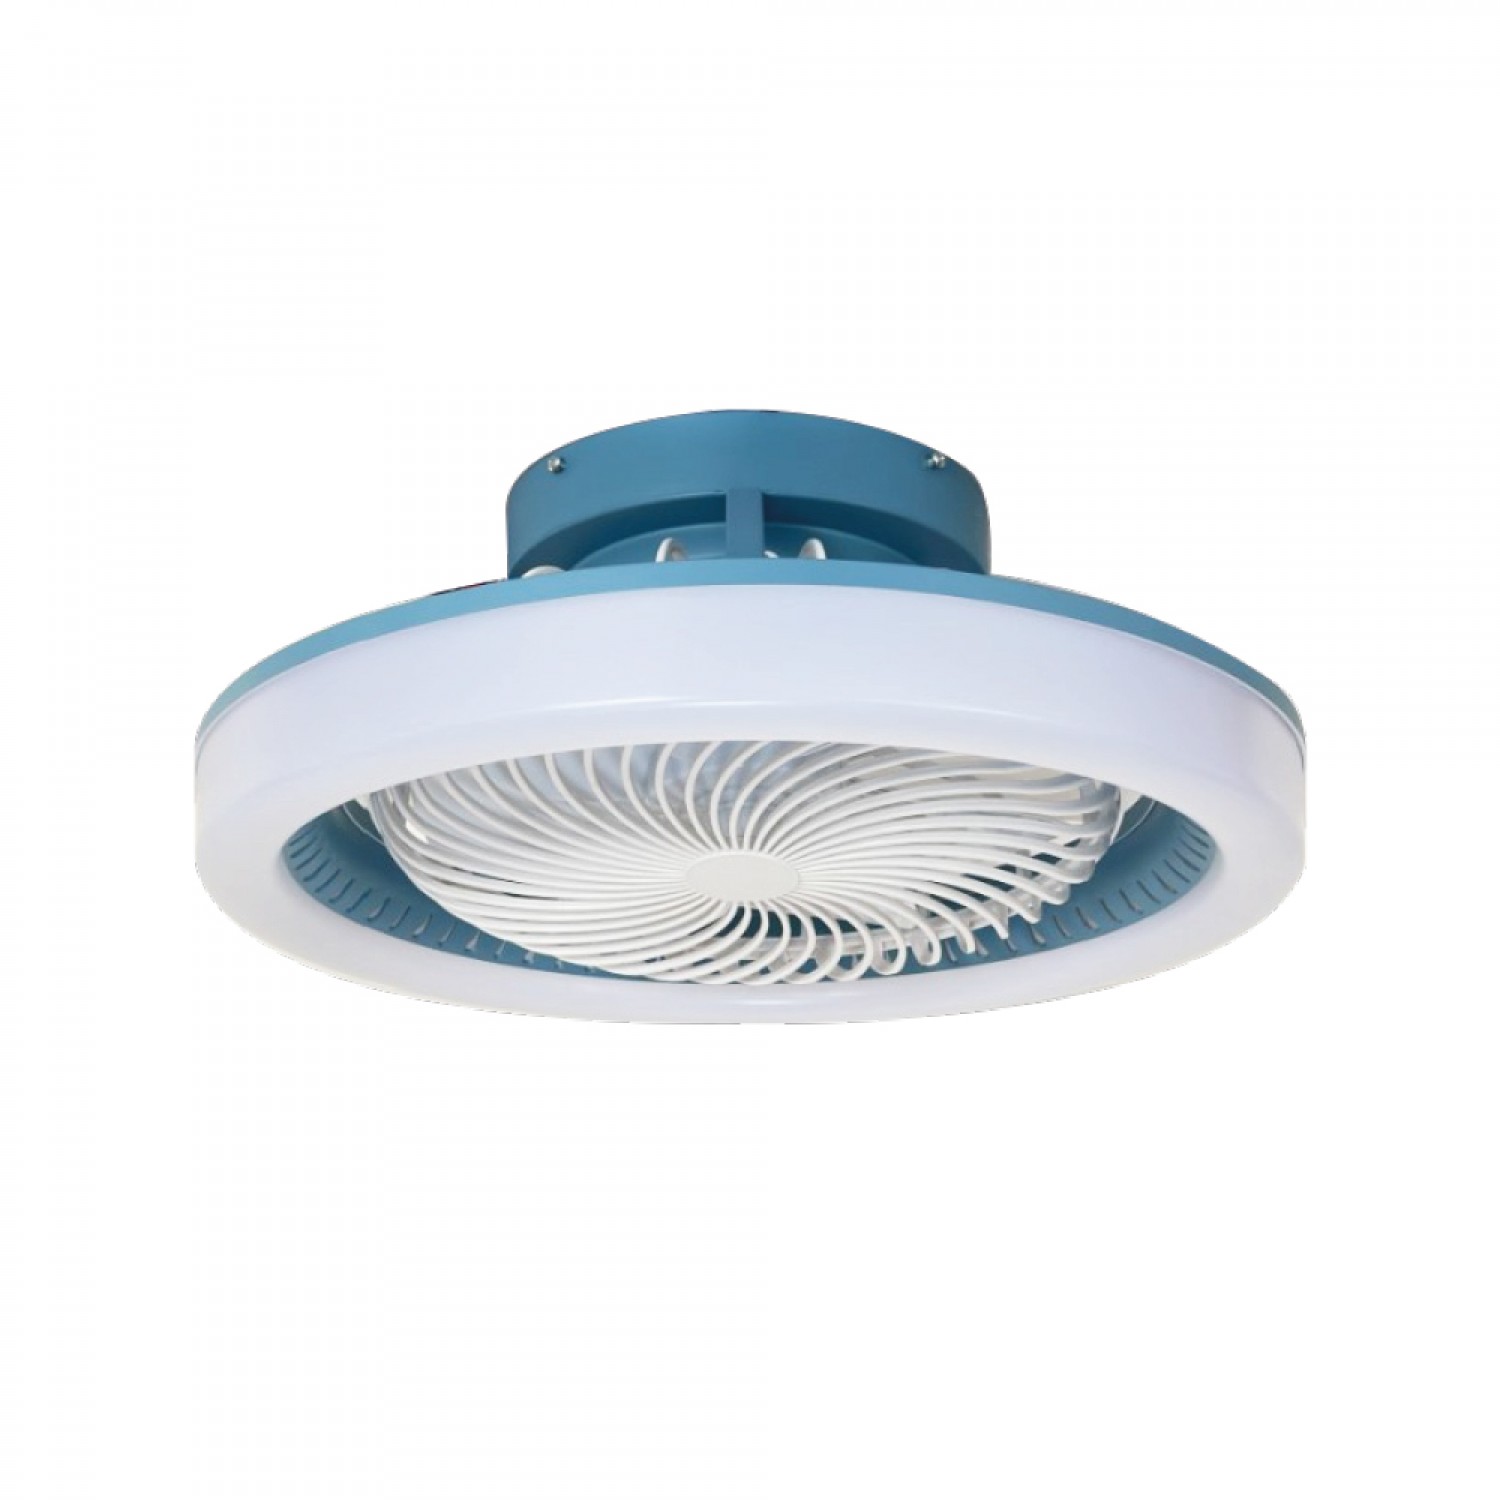 Eidin 36W 3CCT LED Fan Light in Blue Color (101000870)